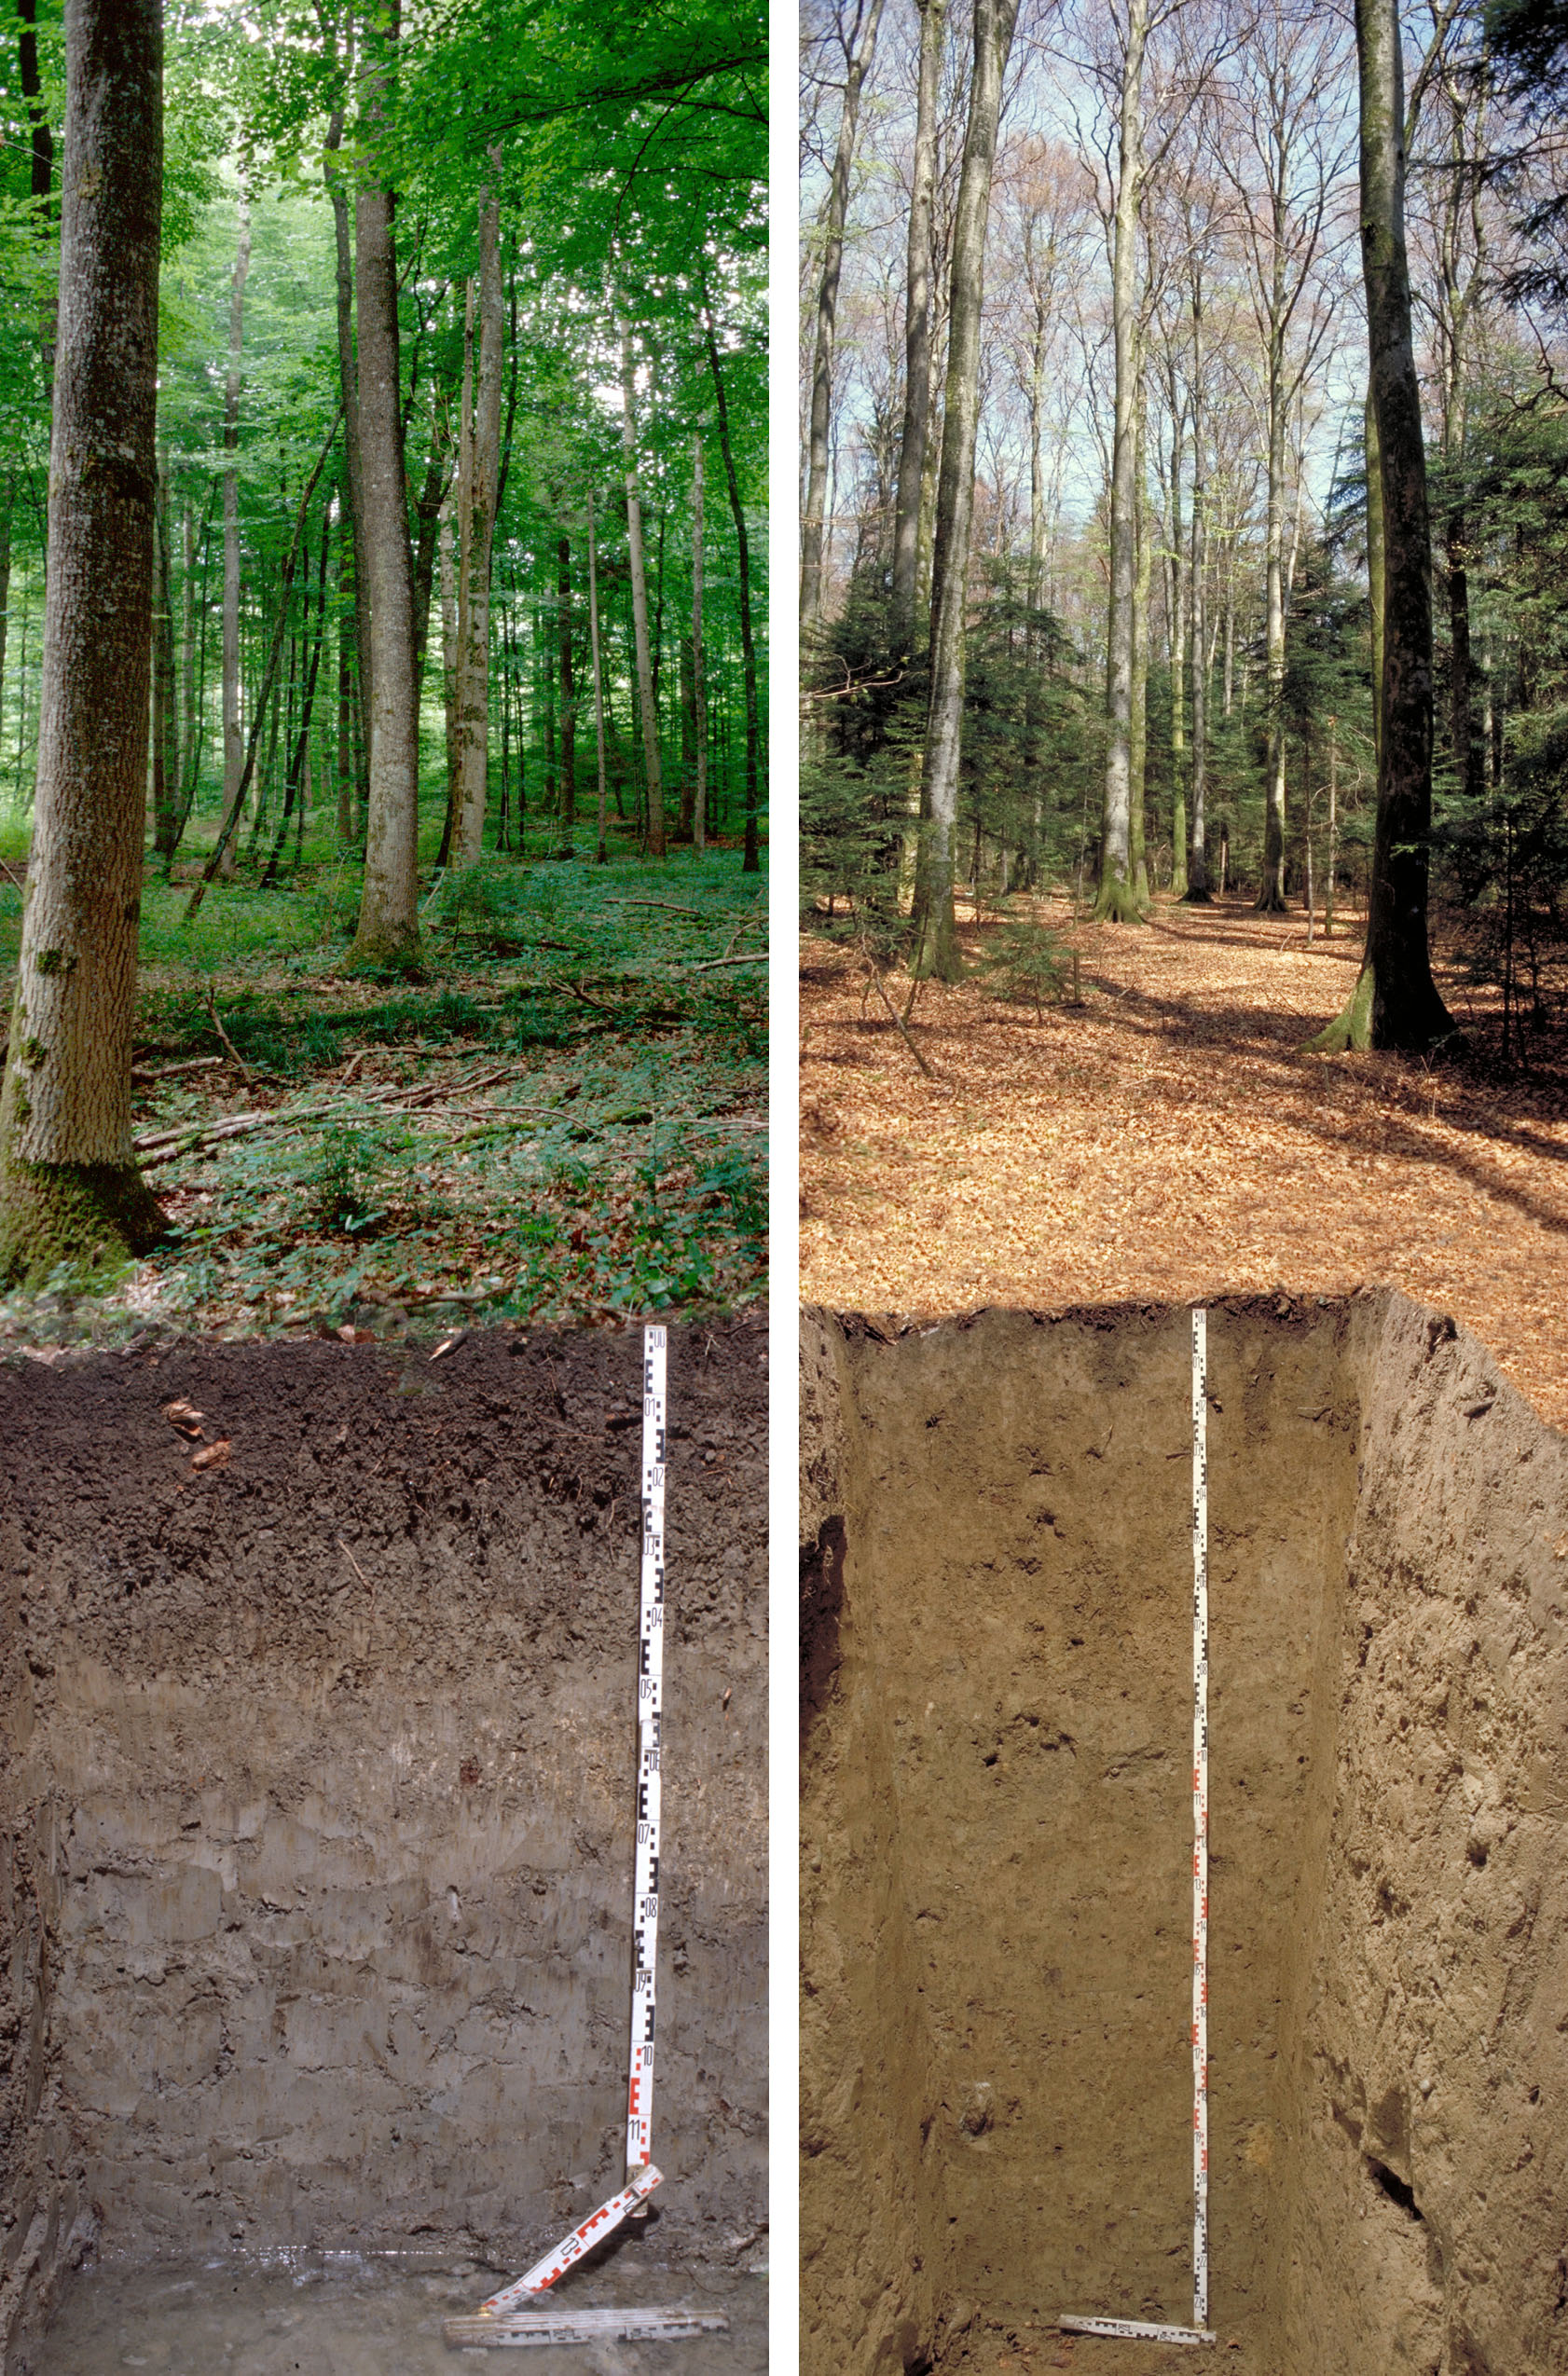 Waldbodenprofile aus Ermatingen/TG (links) und Lausanne im Vergleich. Bilder: Marco Walser/WSL